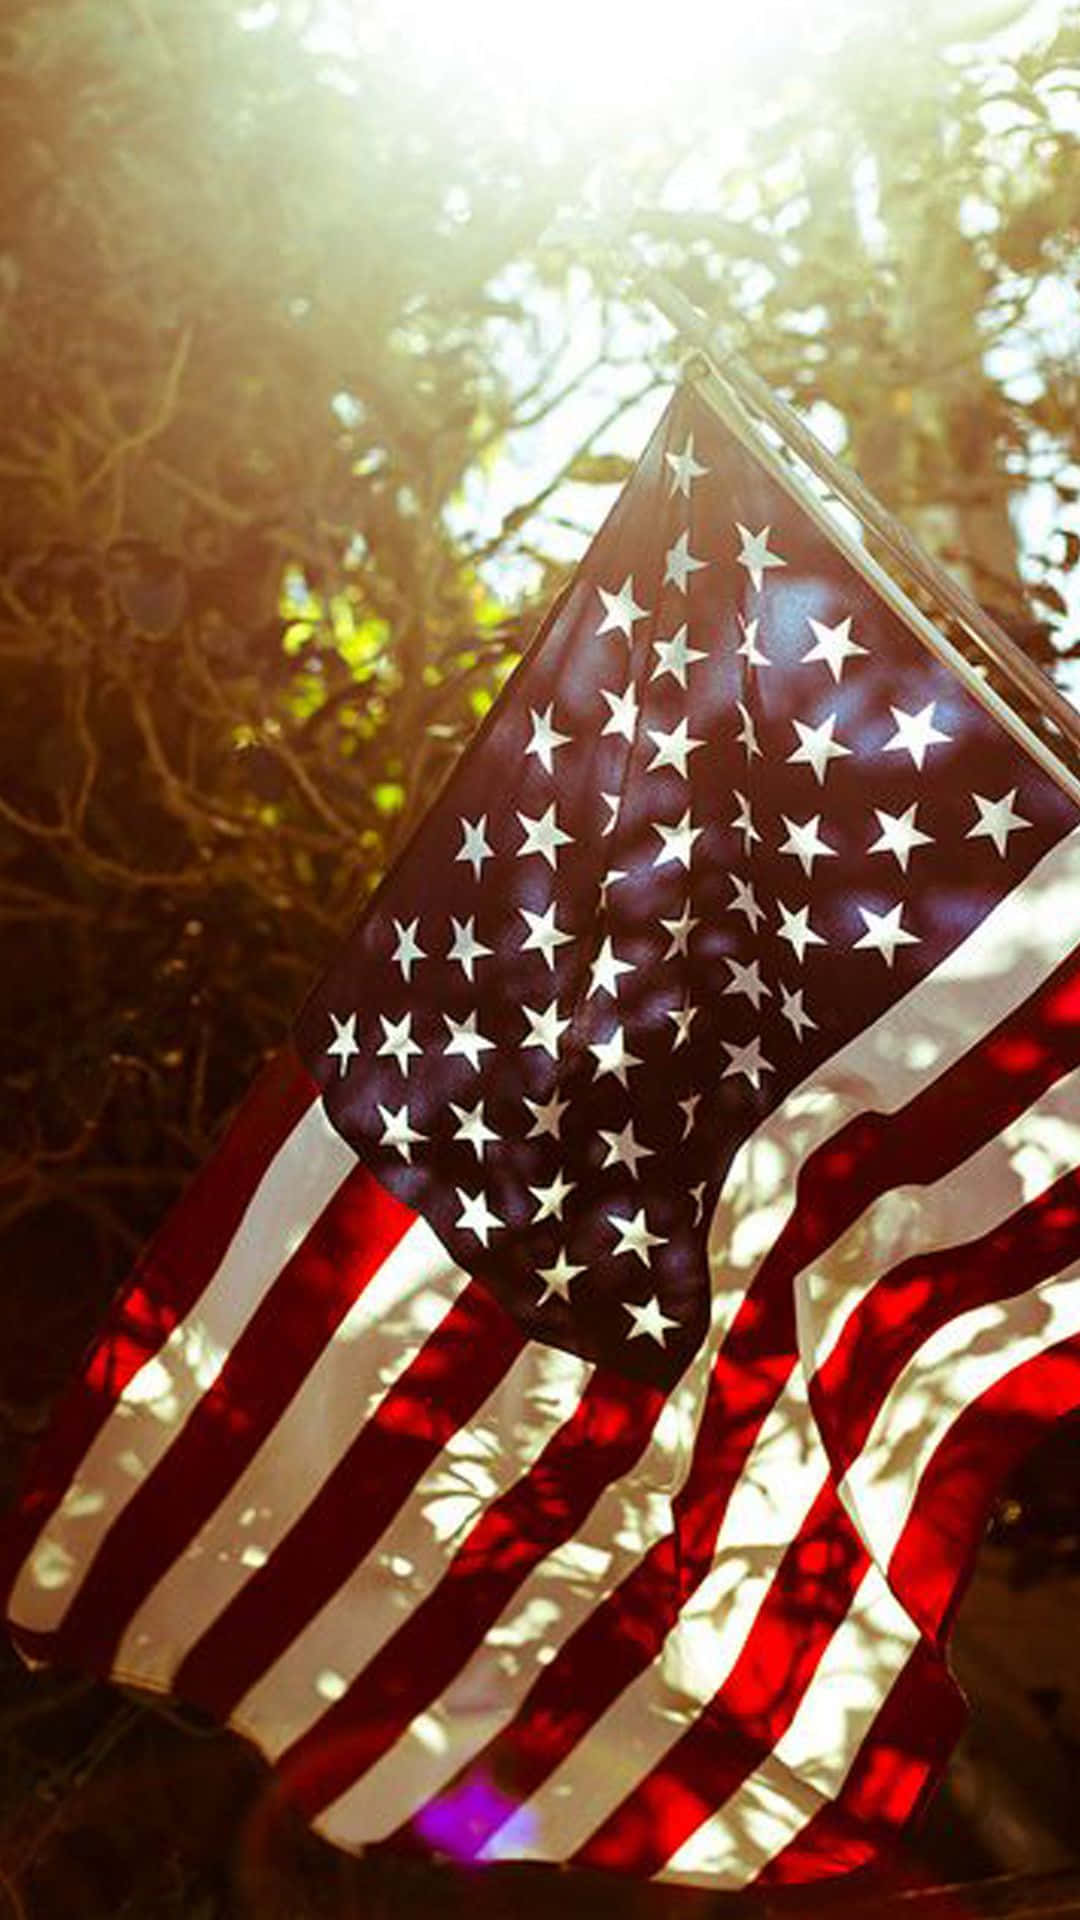 Enamerikansk Flagga Fladdrar I Solen. Wallpaper